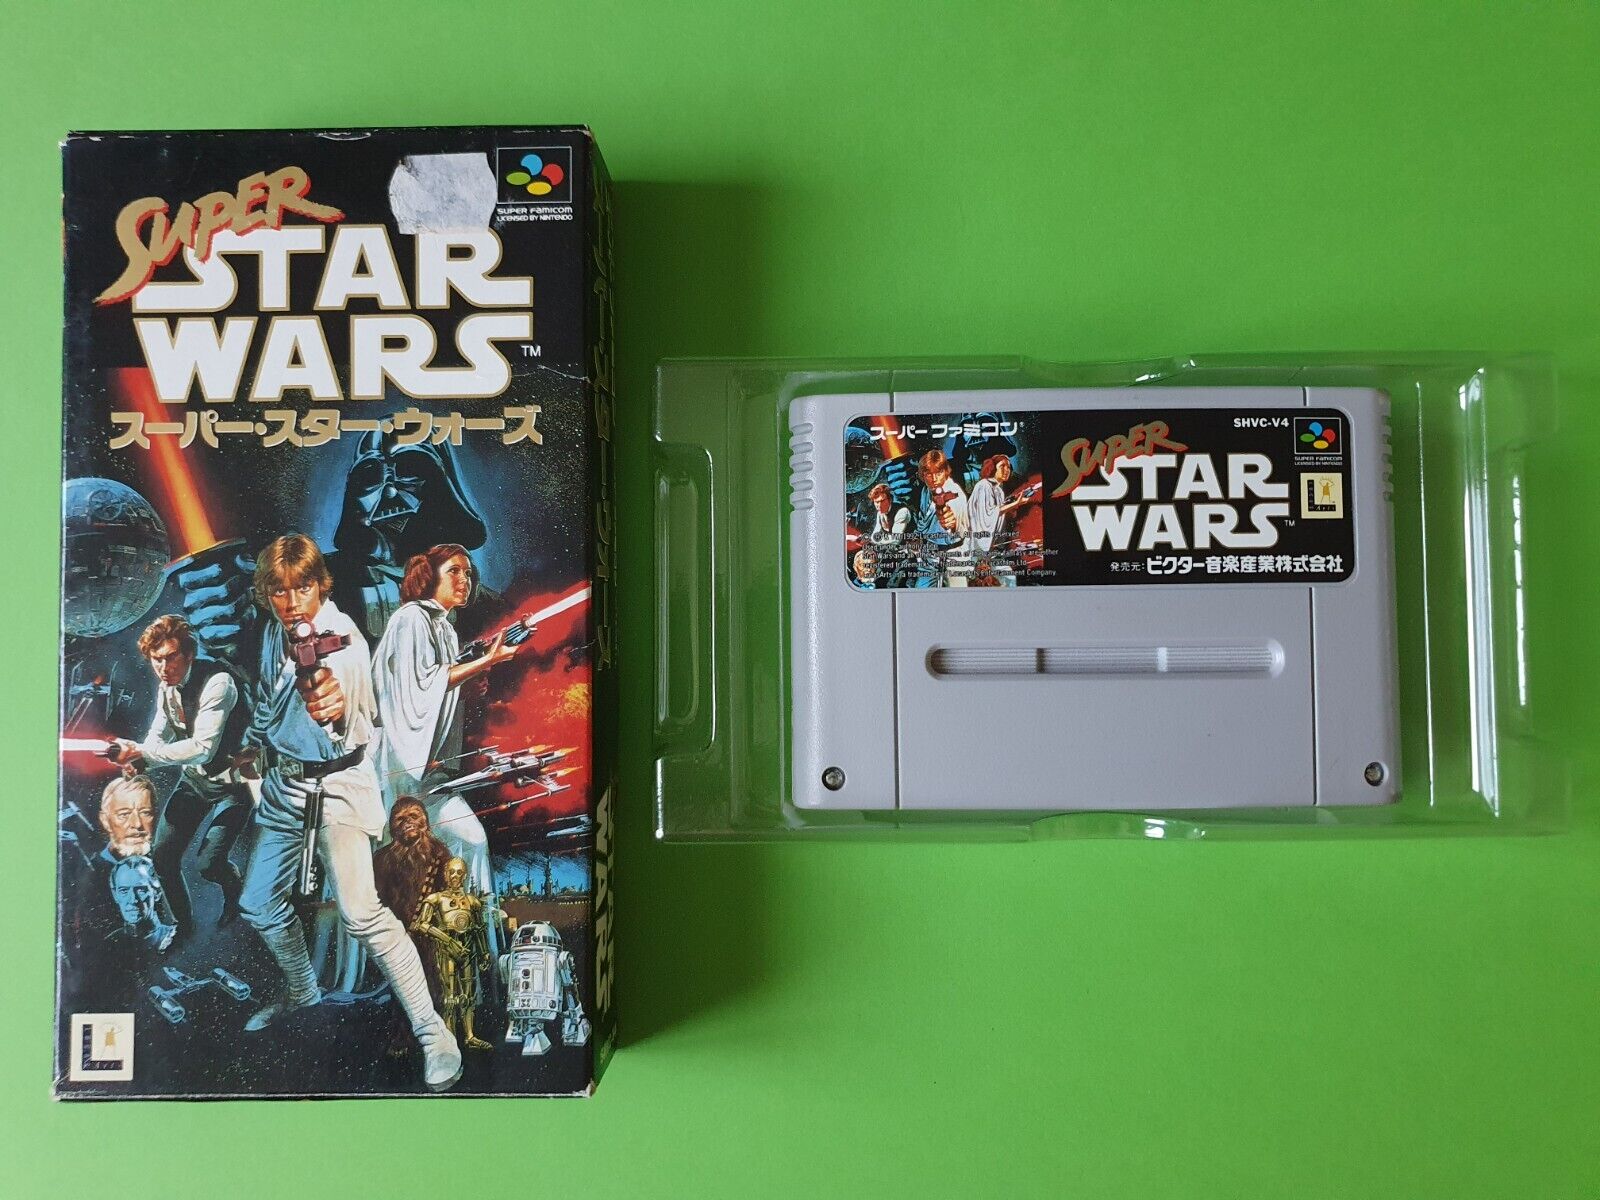 SUPER STAR WARS / jeu Super Famicom SHVC-V4 - NINTENDO / Lucasfilm Games - JVC